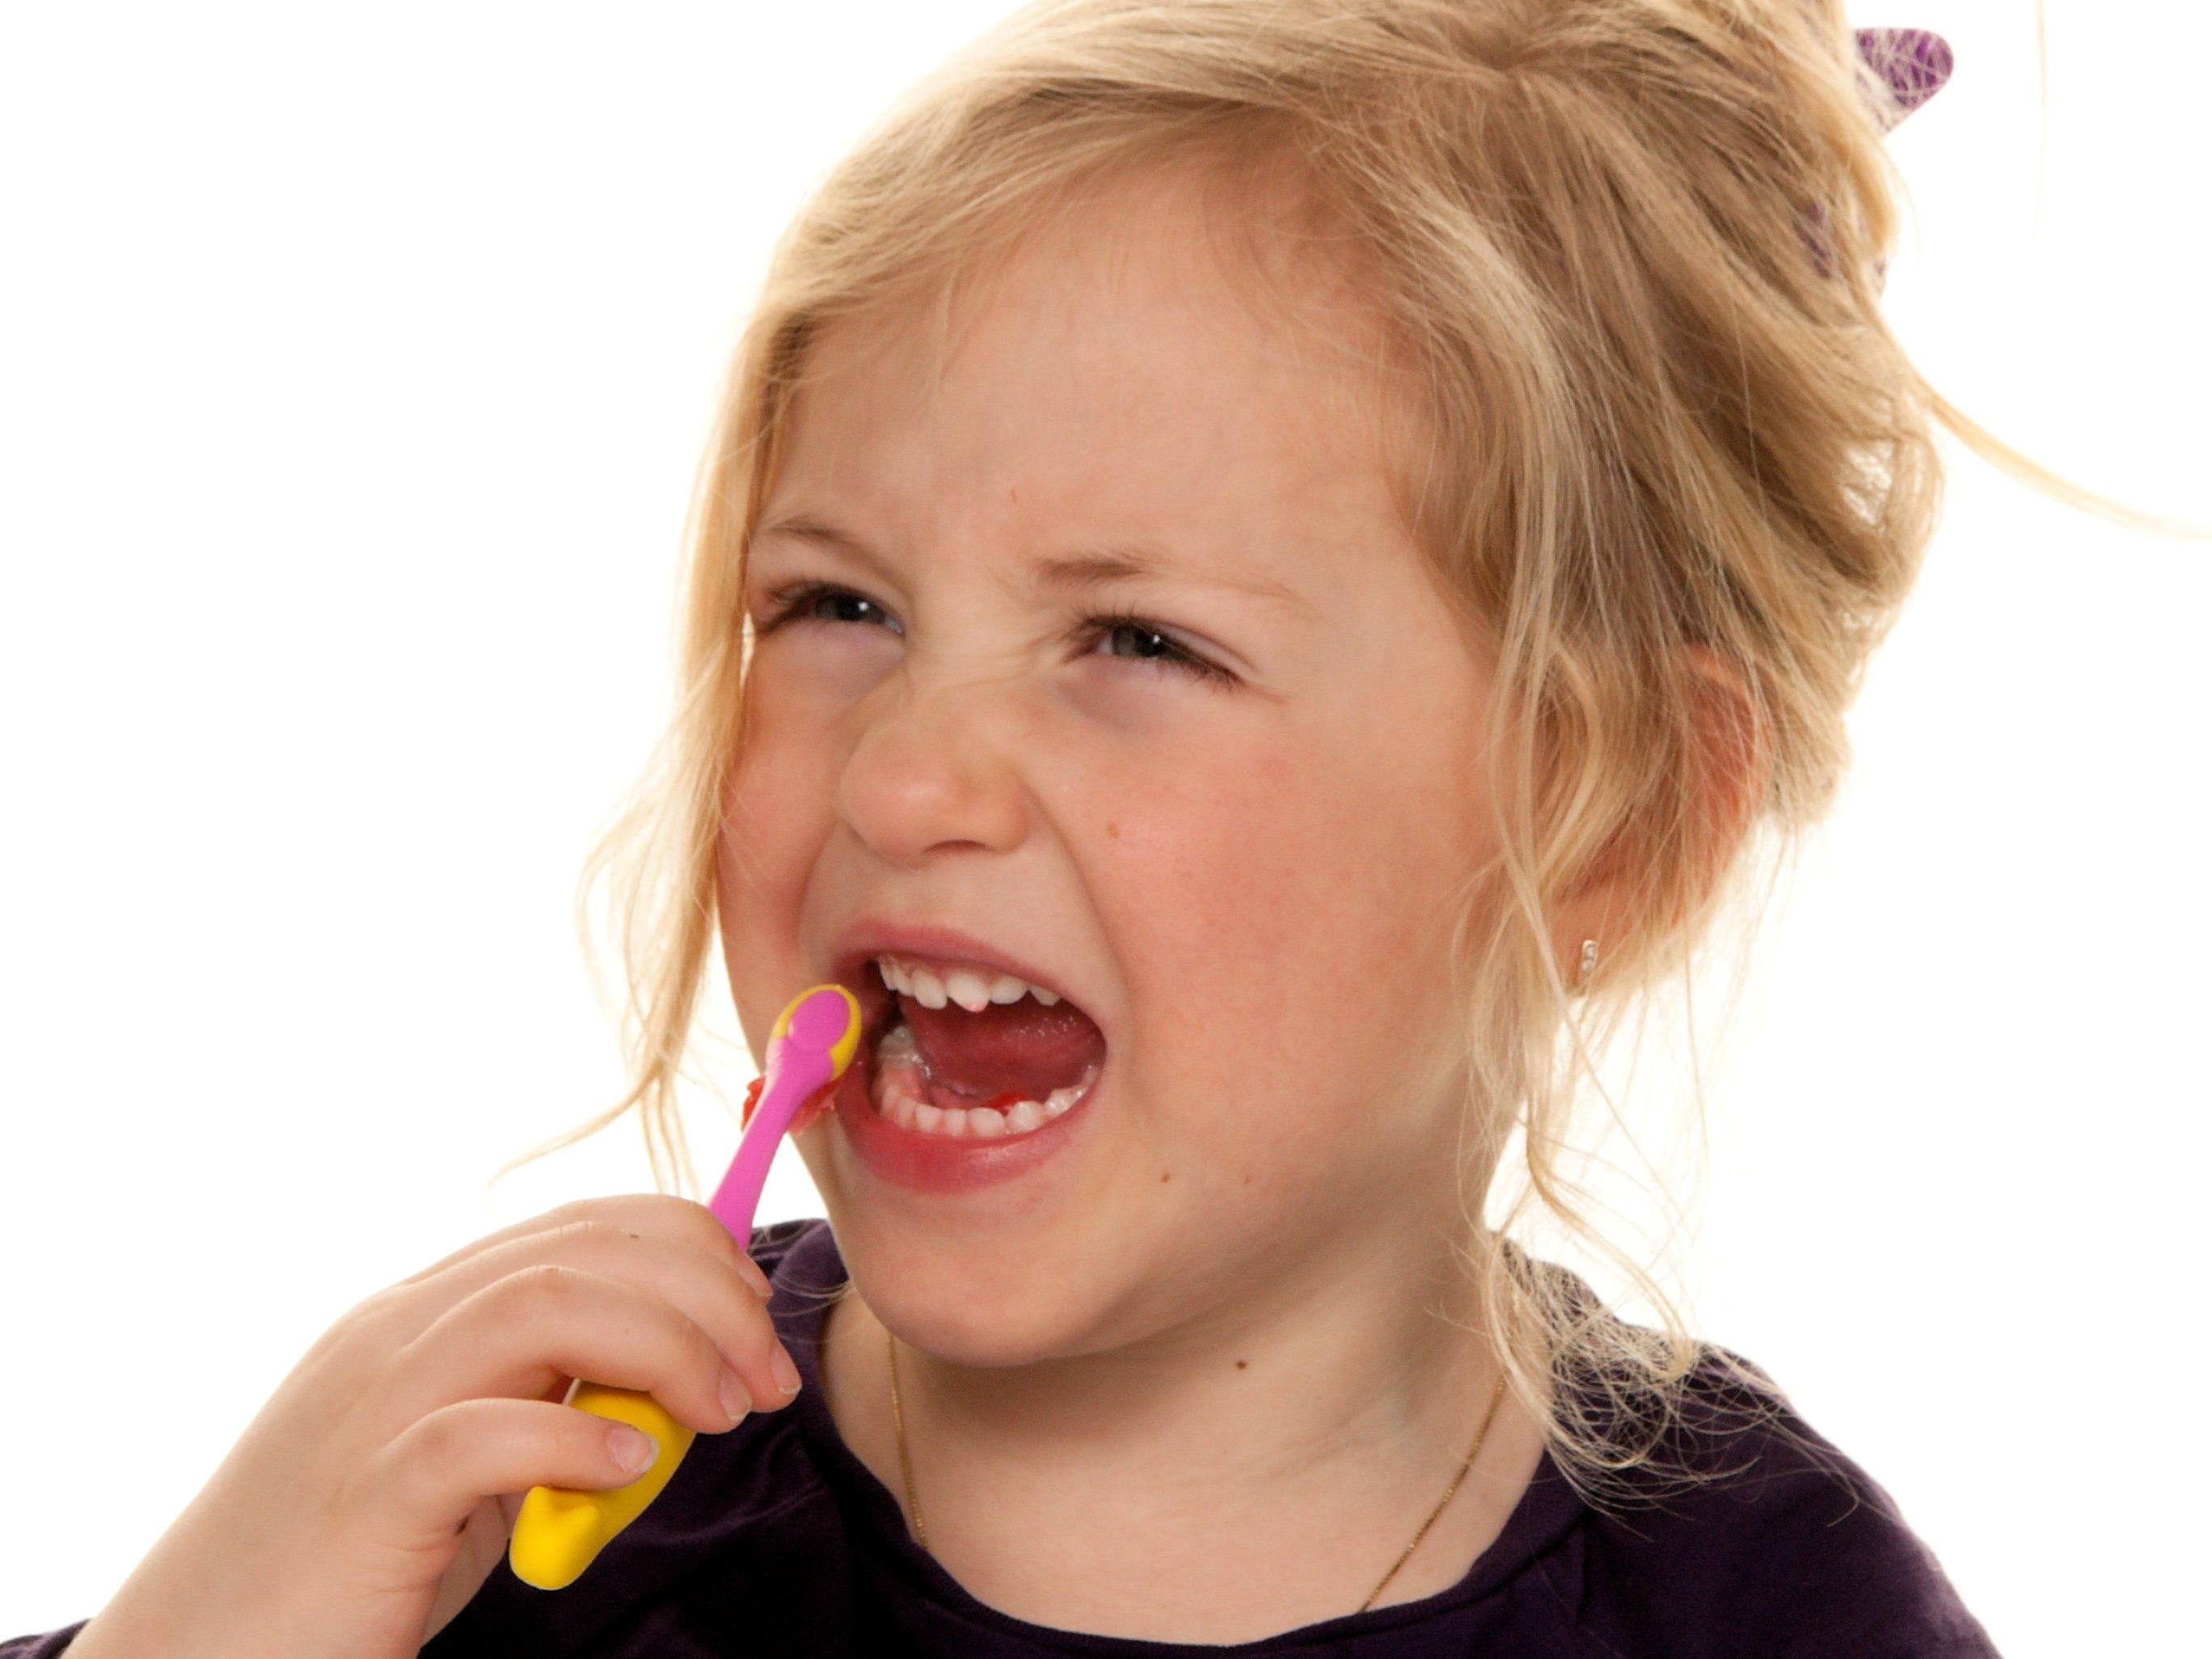 Bei Zahnpasten sind ausgerechnet Kinderprodukte am stärksten betroffen.